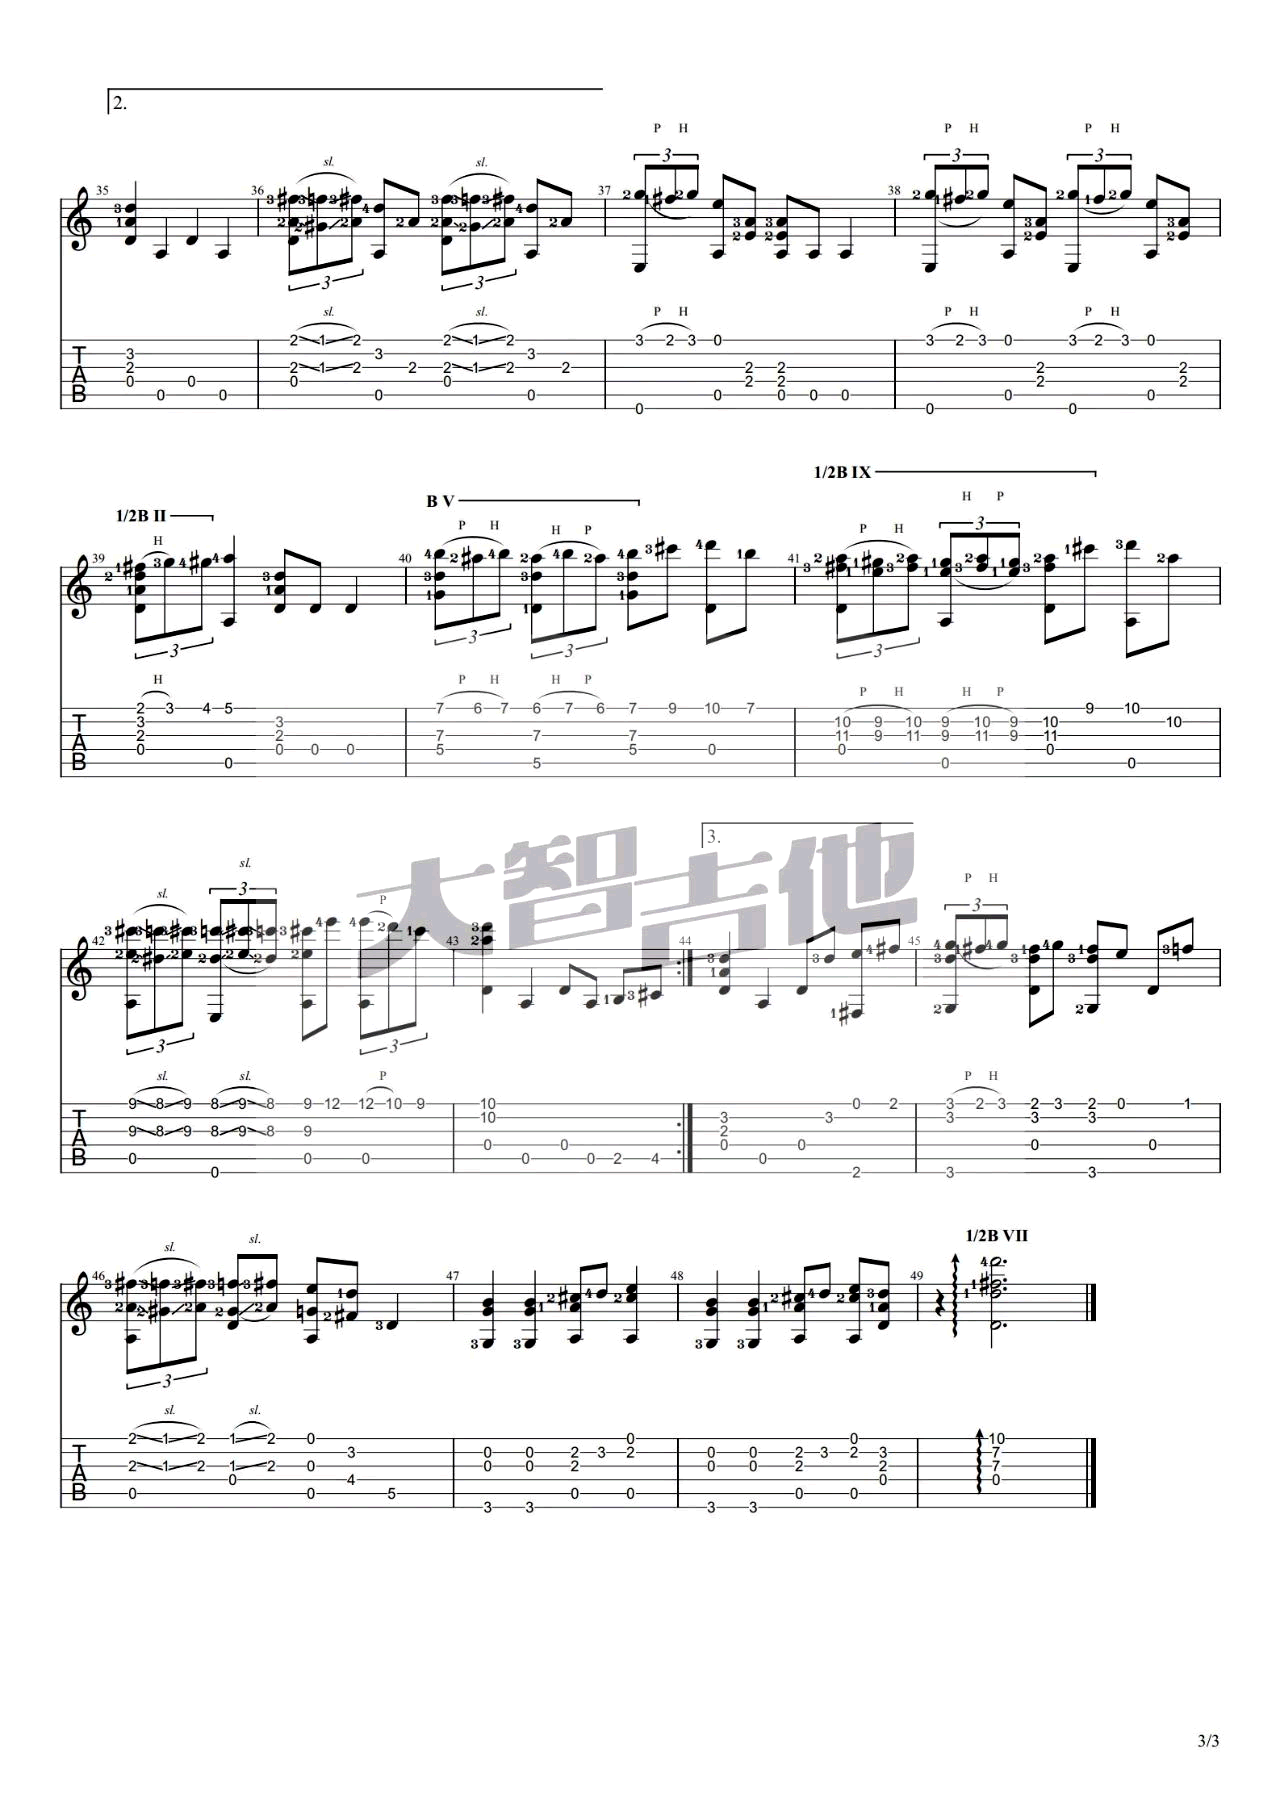 哆啦A梦主题曲-哆啦A梦之歌-Doraemon五线谱预览2-钢琴谱文件（五线谱、双手简谱、数字谱、Midi、PDF）免费下载